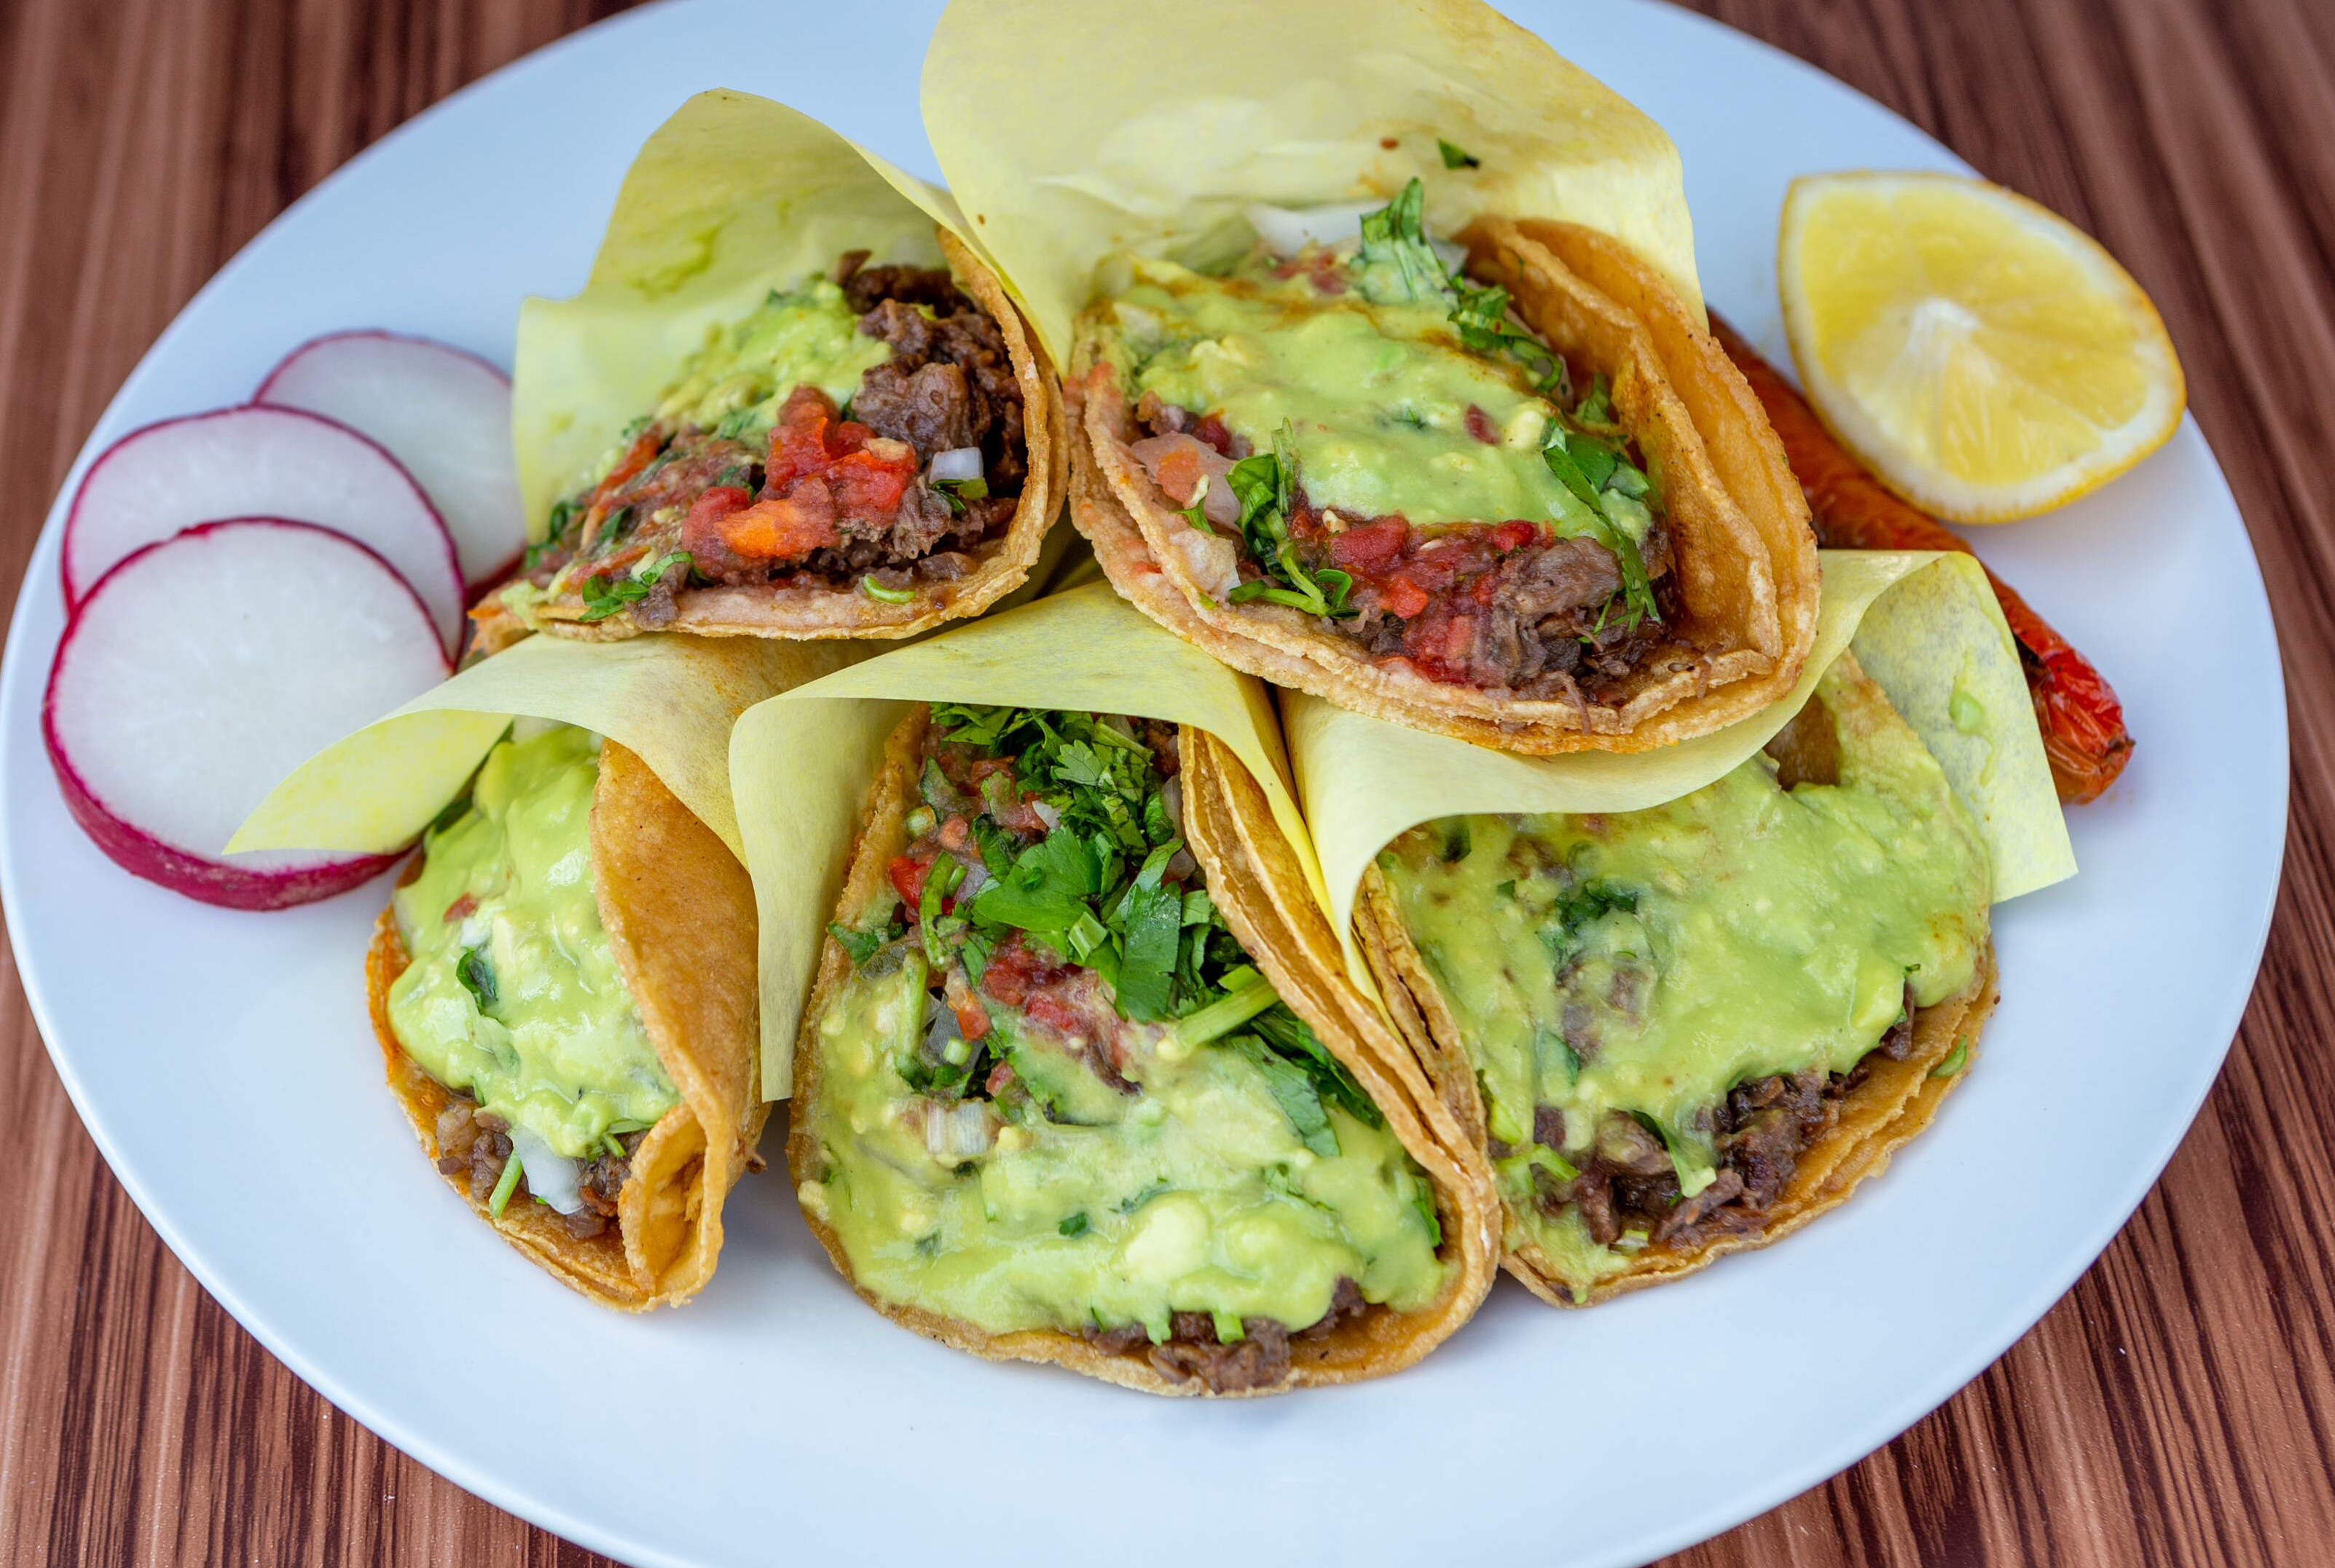 Tacos El Tijuanense's Menu: Prices and Deliver - Doordash